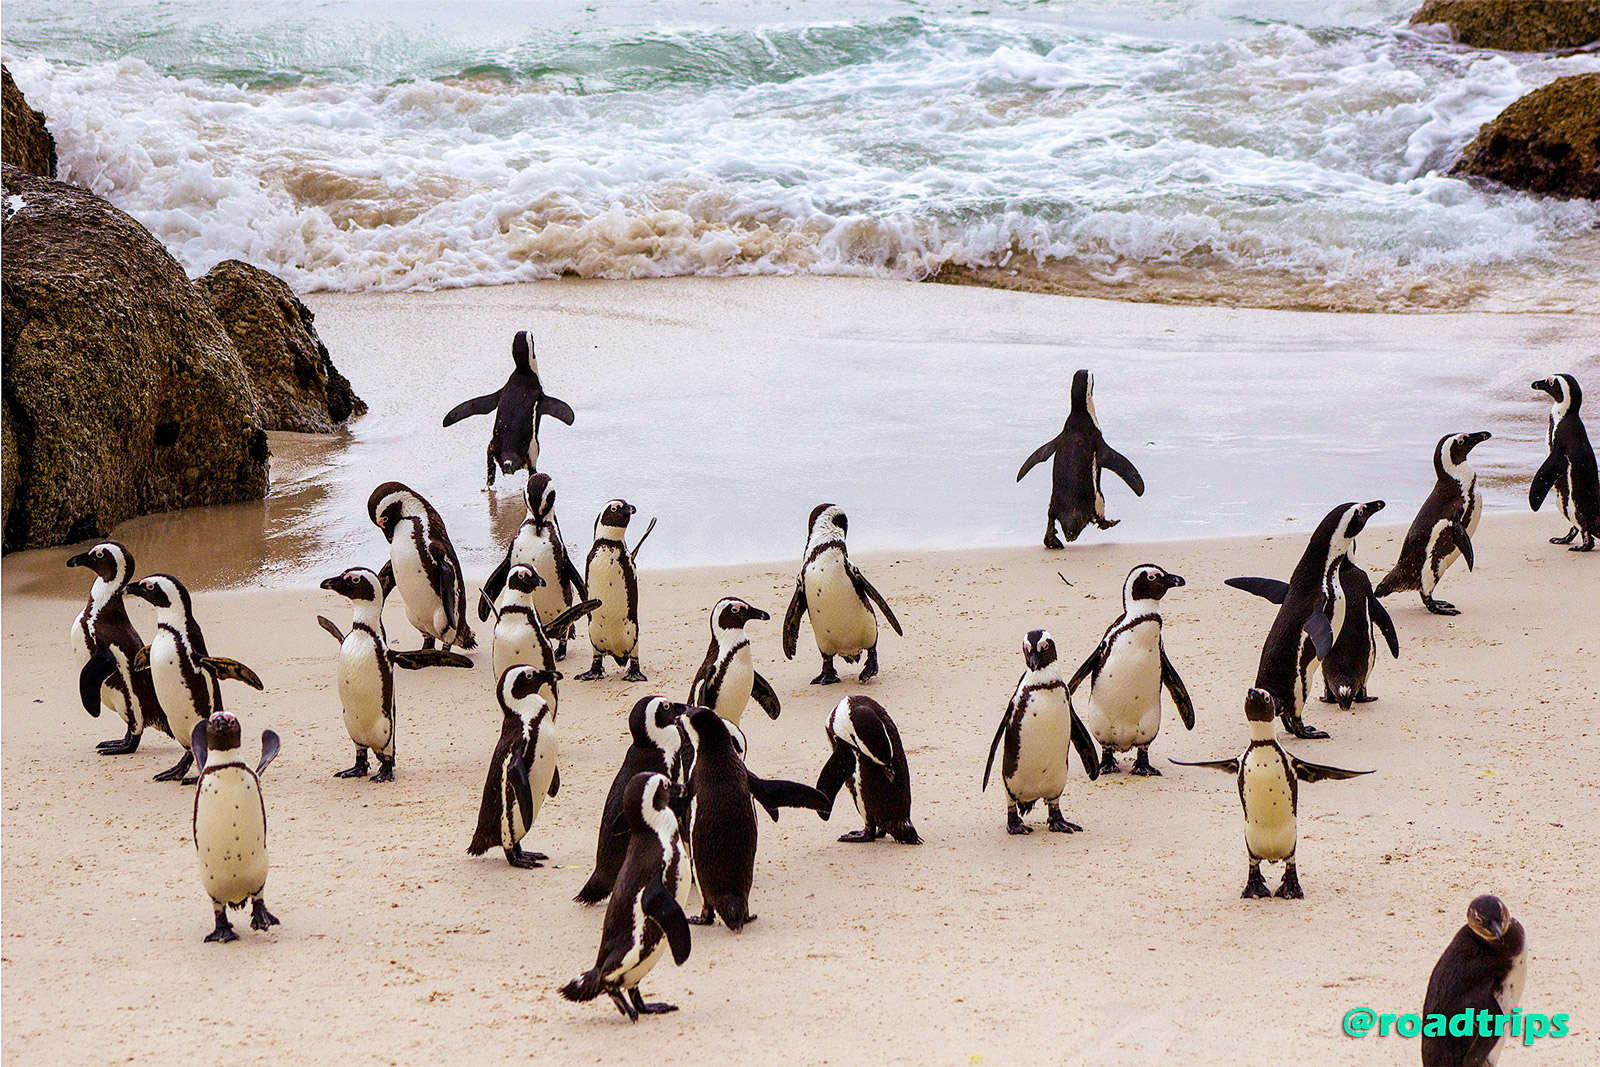 Penguins-at-Simon's-Town3.jpg